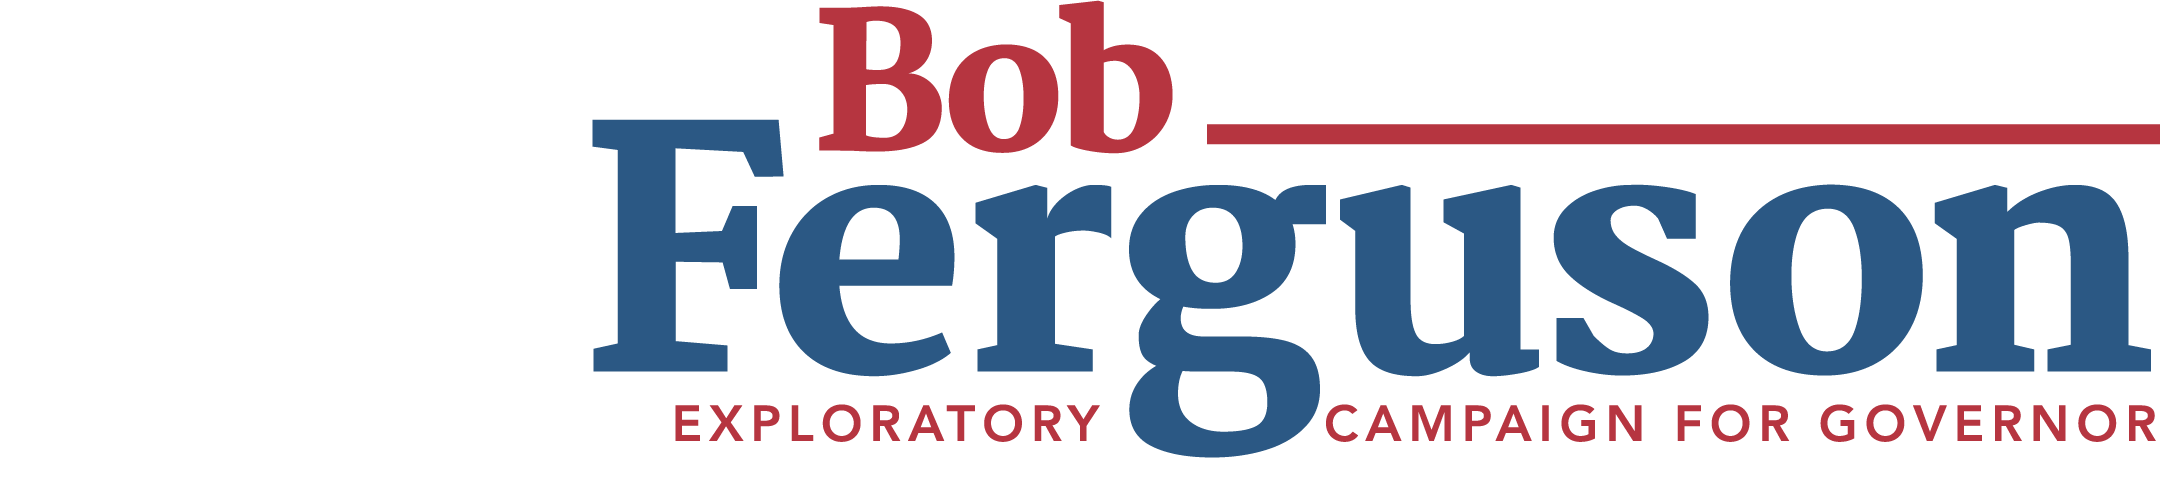 Bob Ferguson for Governor logo